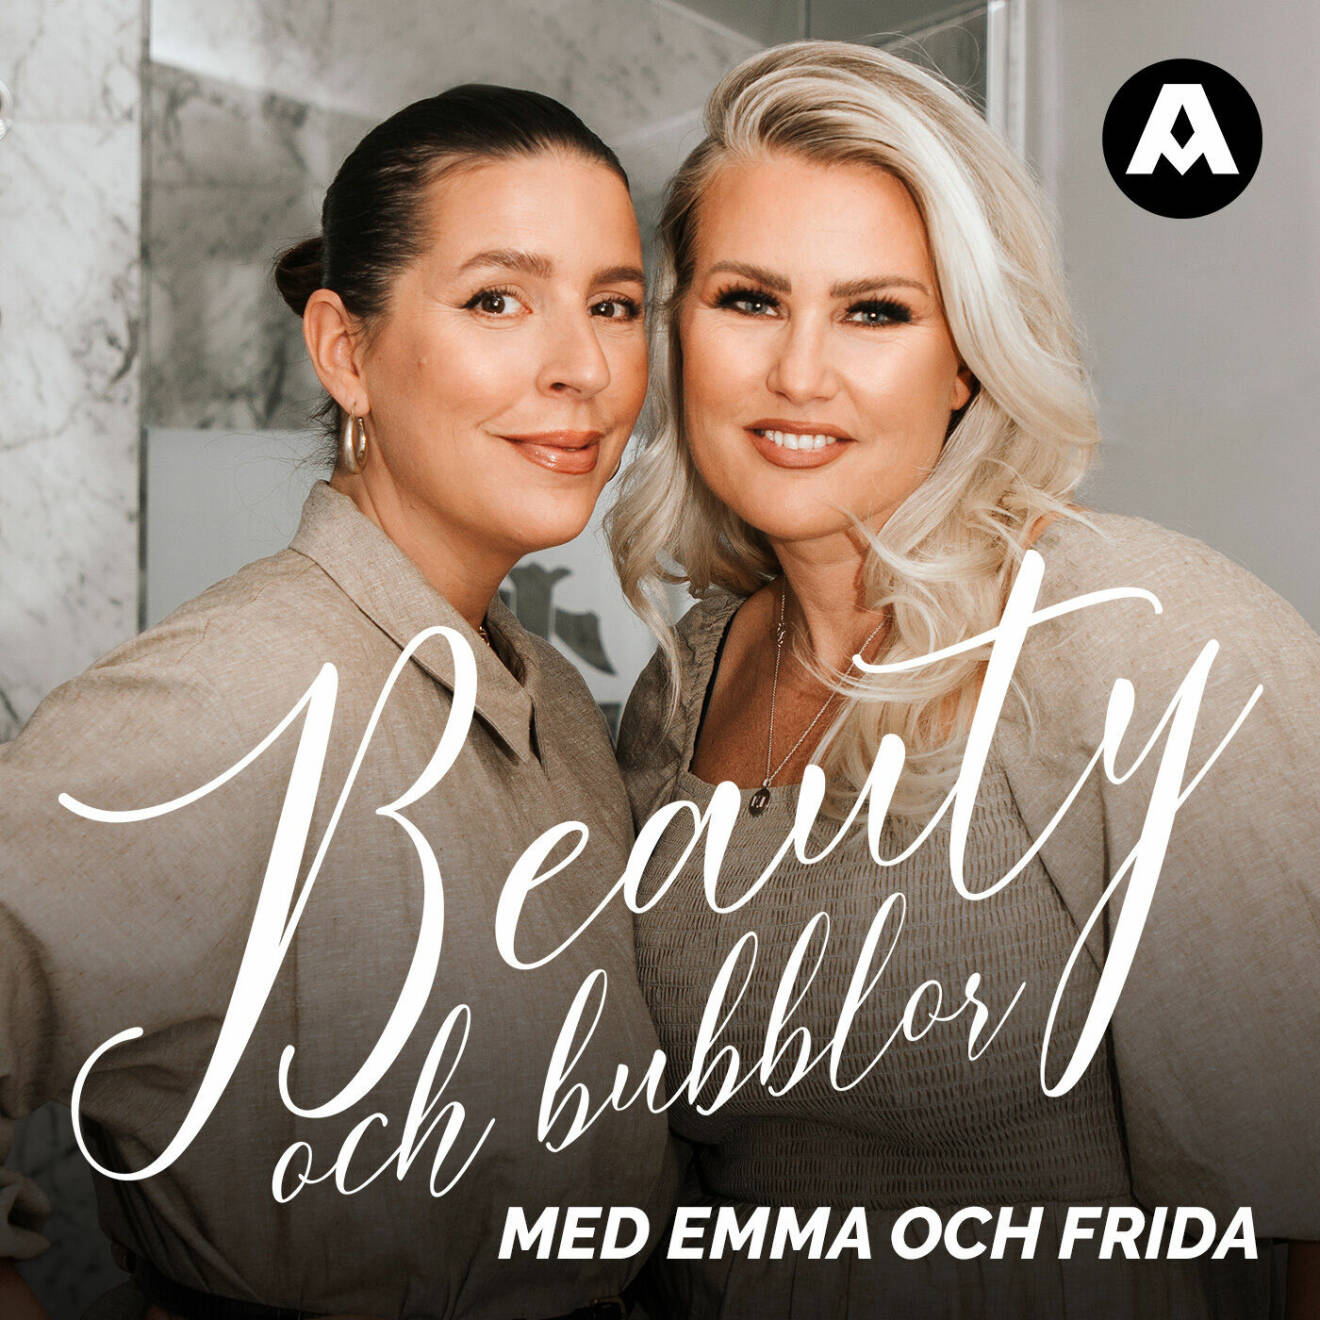 Emma Unkel och Frida Fahrman driver podden Beauty och bubblor.